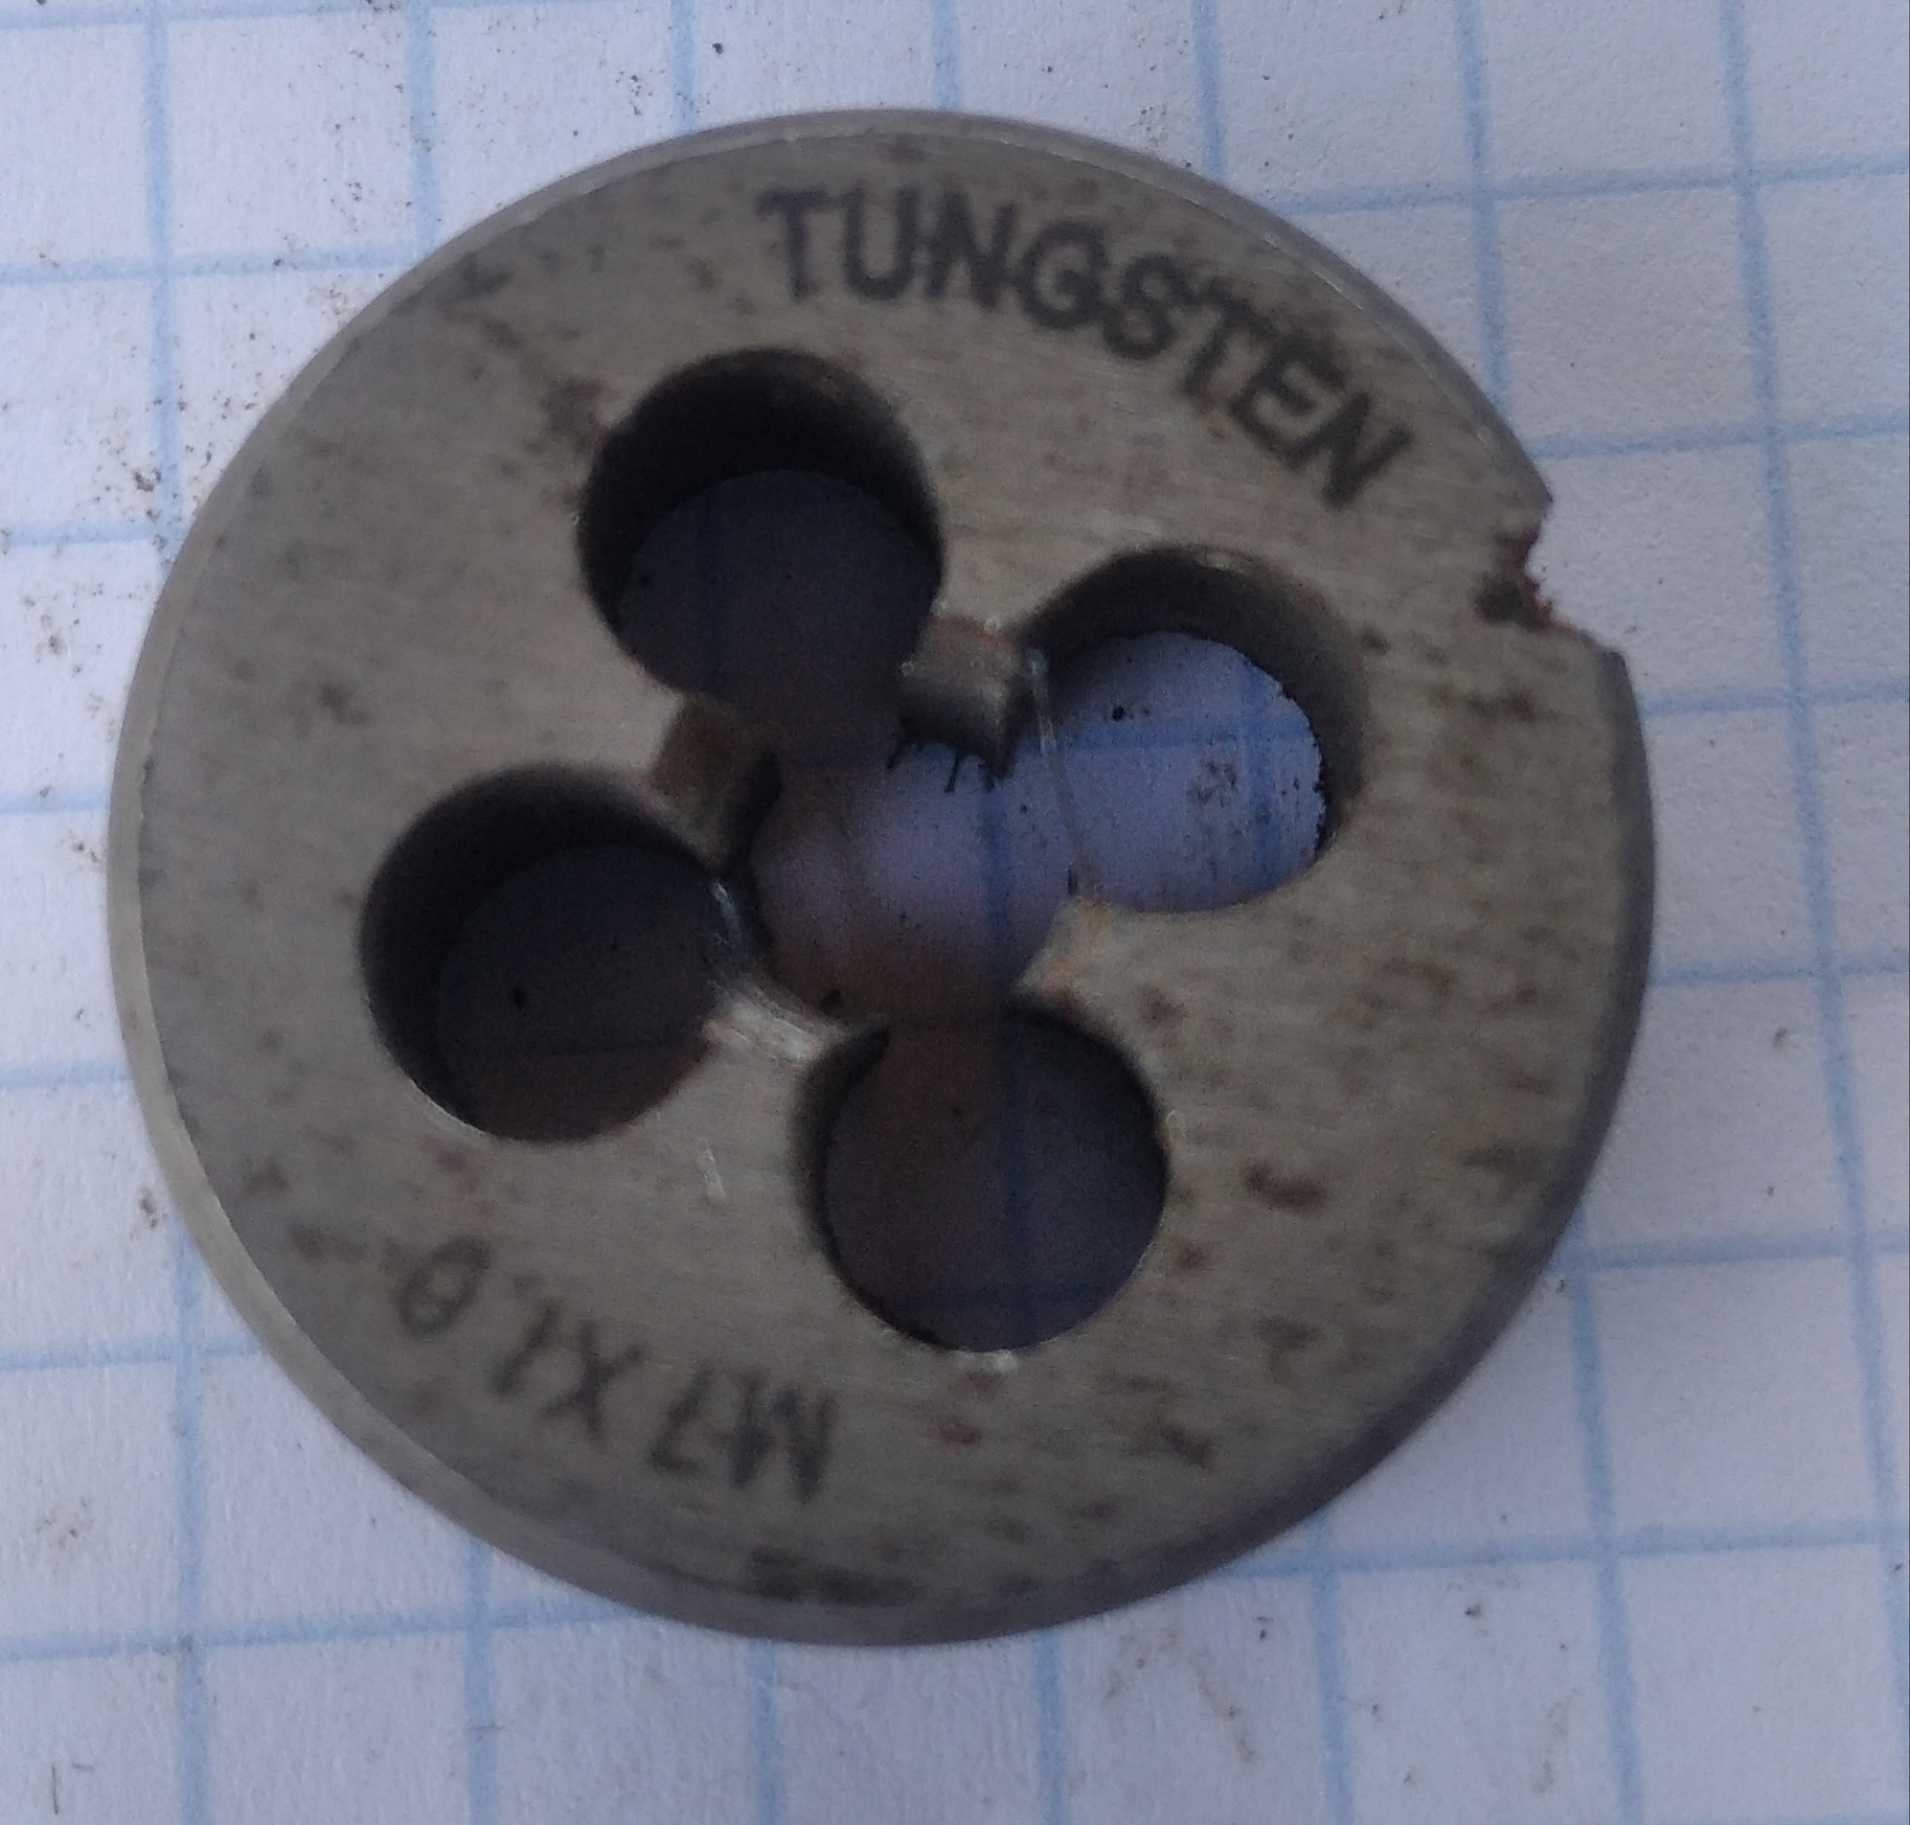 Tungsten вольфрамовая сталь метрическая гайка набор 9шт